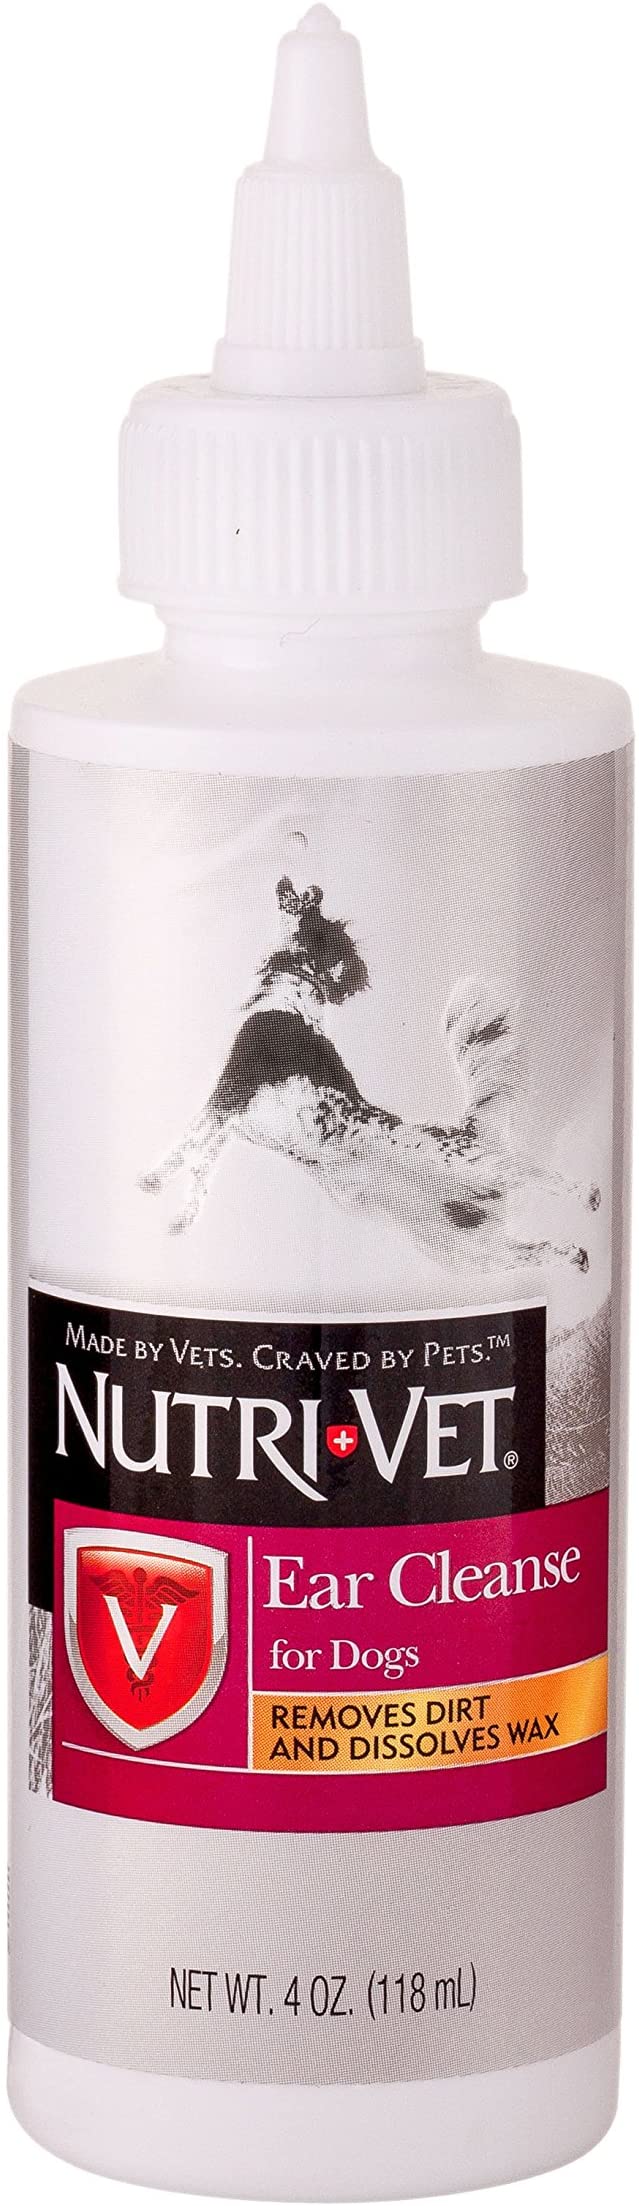 Nutri-Vet Ear Cleanse Liquid for Dogs, 4-Ounce